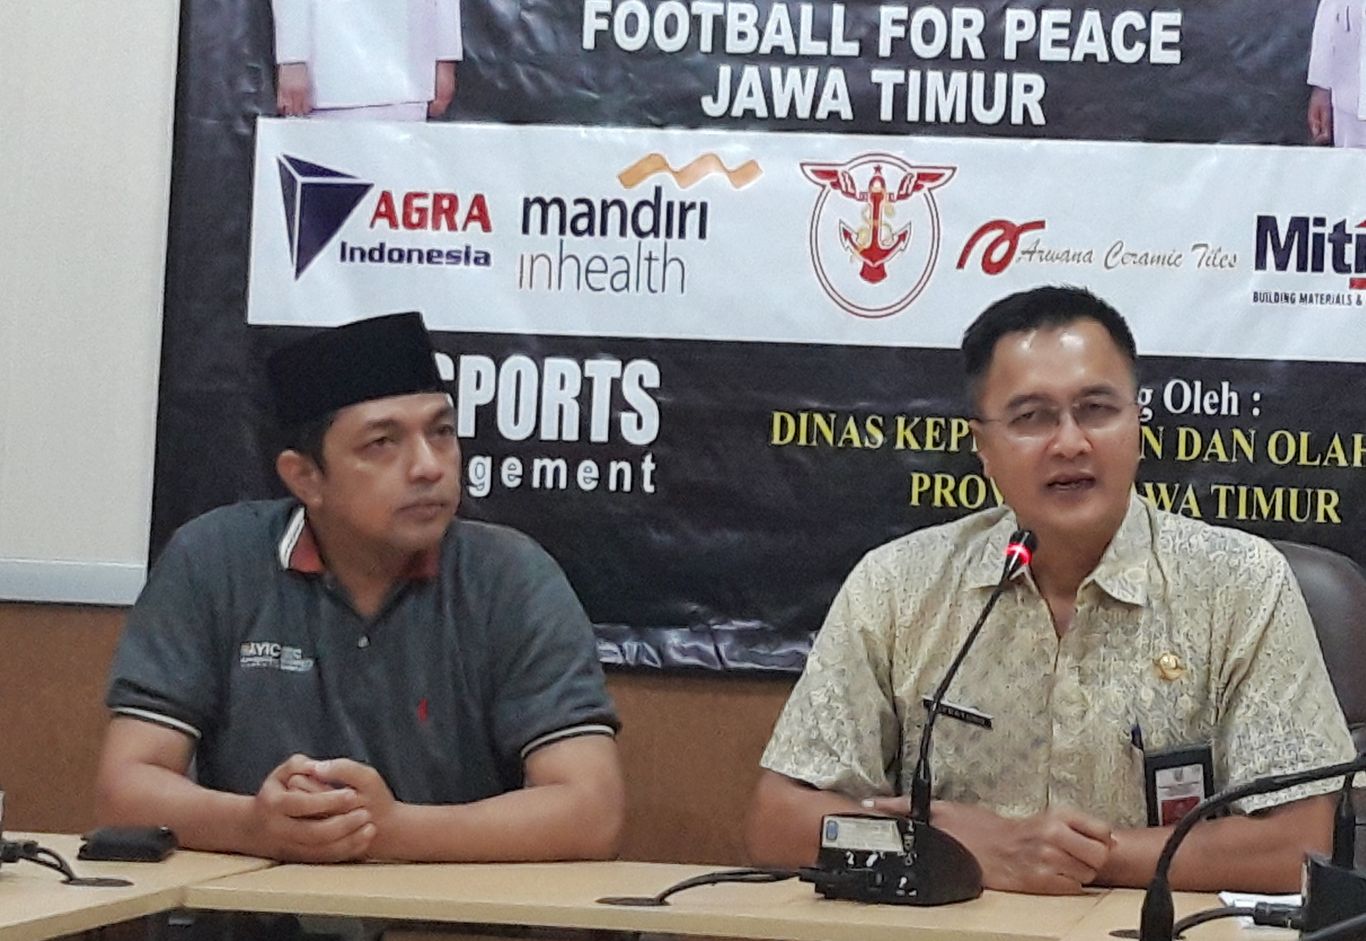 Ketua panitia Football for Peace, Gus Hans bersama Kadispora Surabaya, Soepratomo dalam konferensi pers, Jumat, 15 Maret 2019. (Foto: Haris/ngopibareng.id)